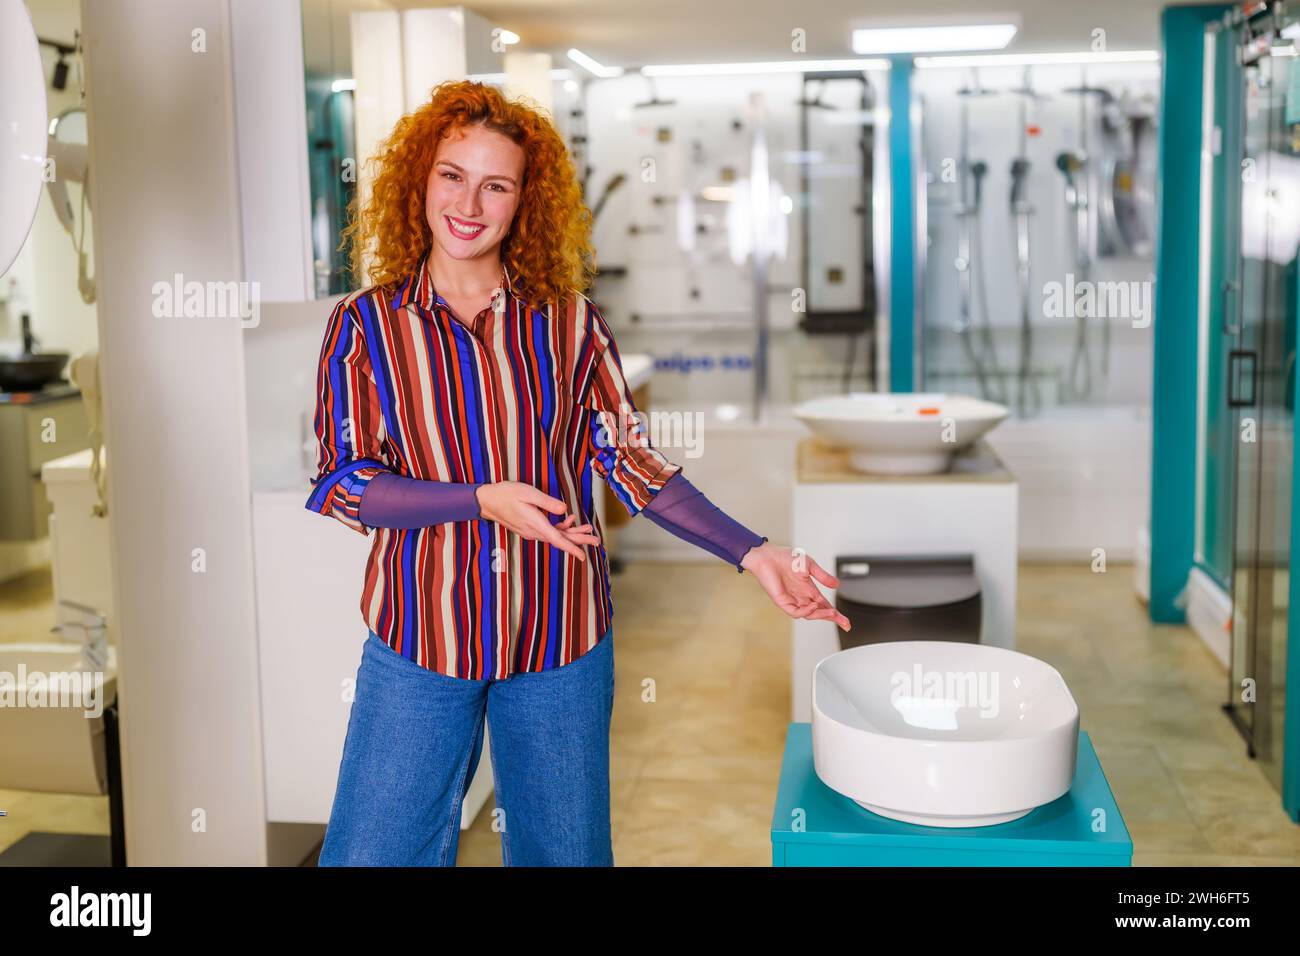 Ritratto del venditore nel negozio di articoli da bagno. Una donna rossa felice lavora nel negozio di bagni. Occupazione delle vendite. Foto Stock